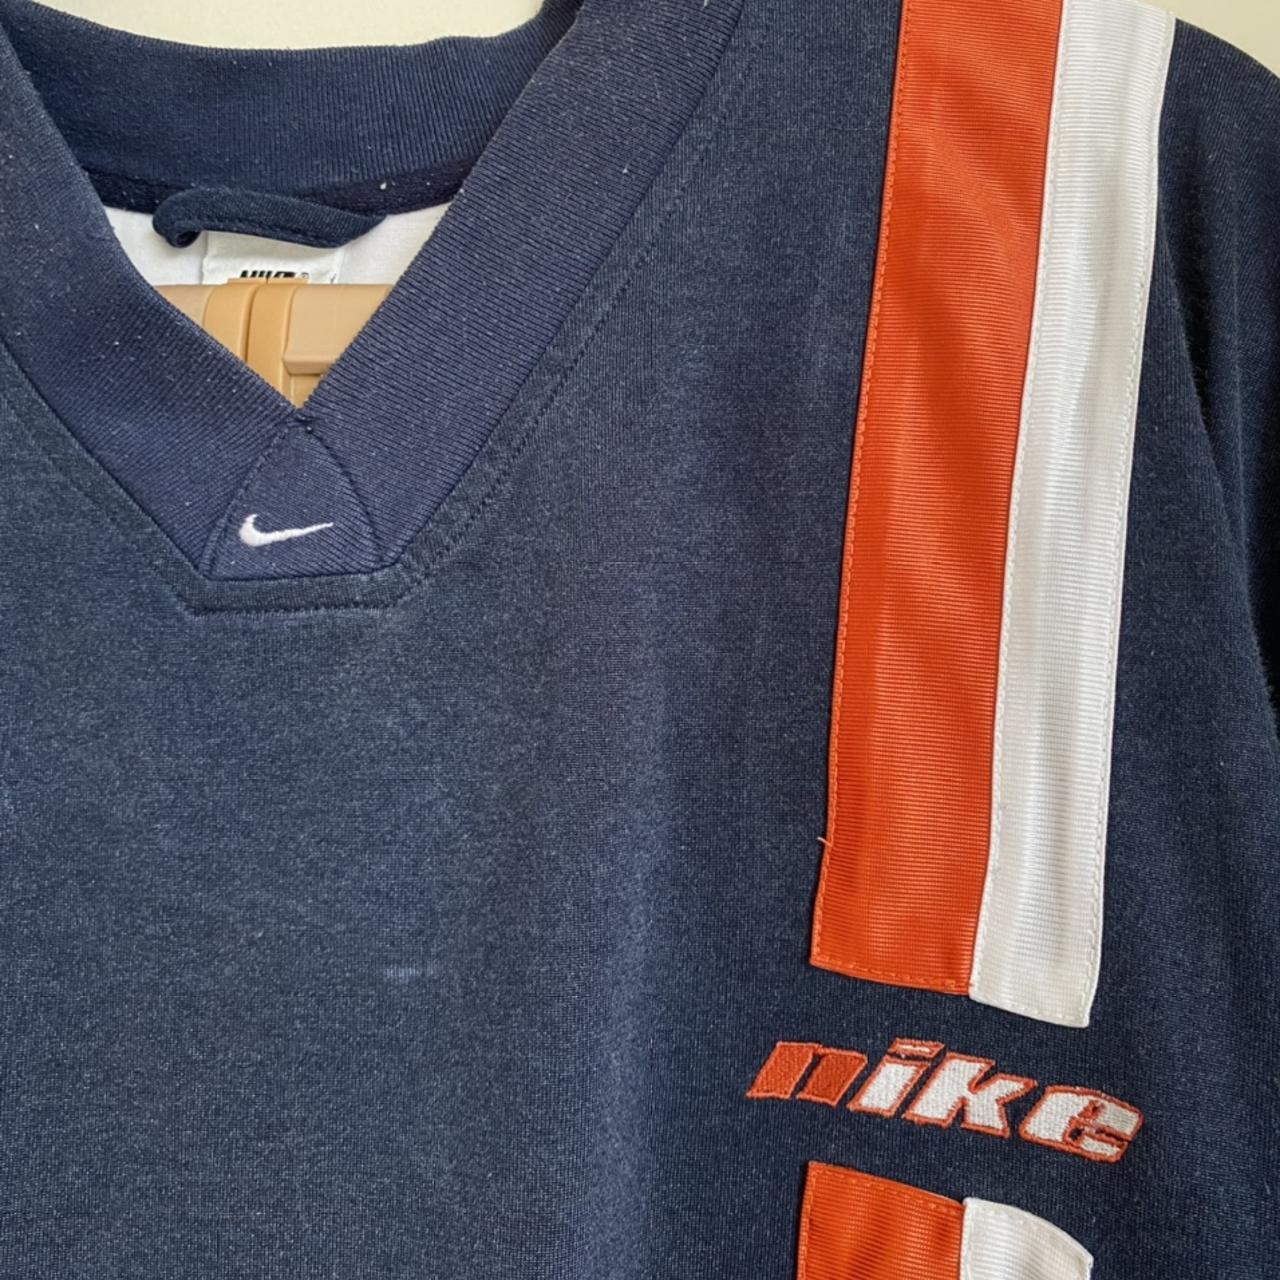 90's Vintage Braves Nike Center Swoosh Shirt Tagged - Depop